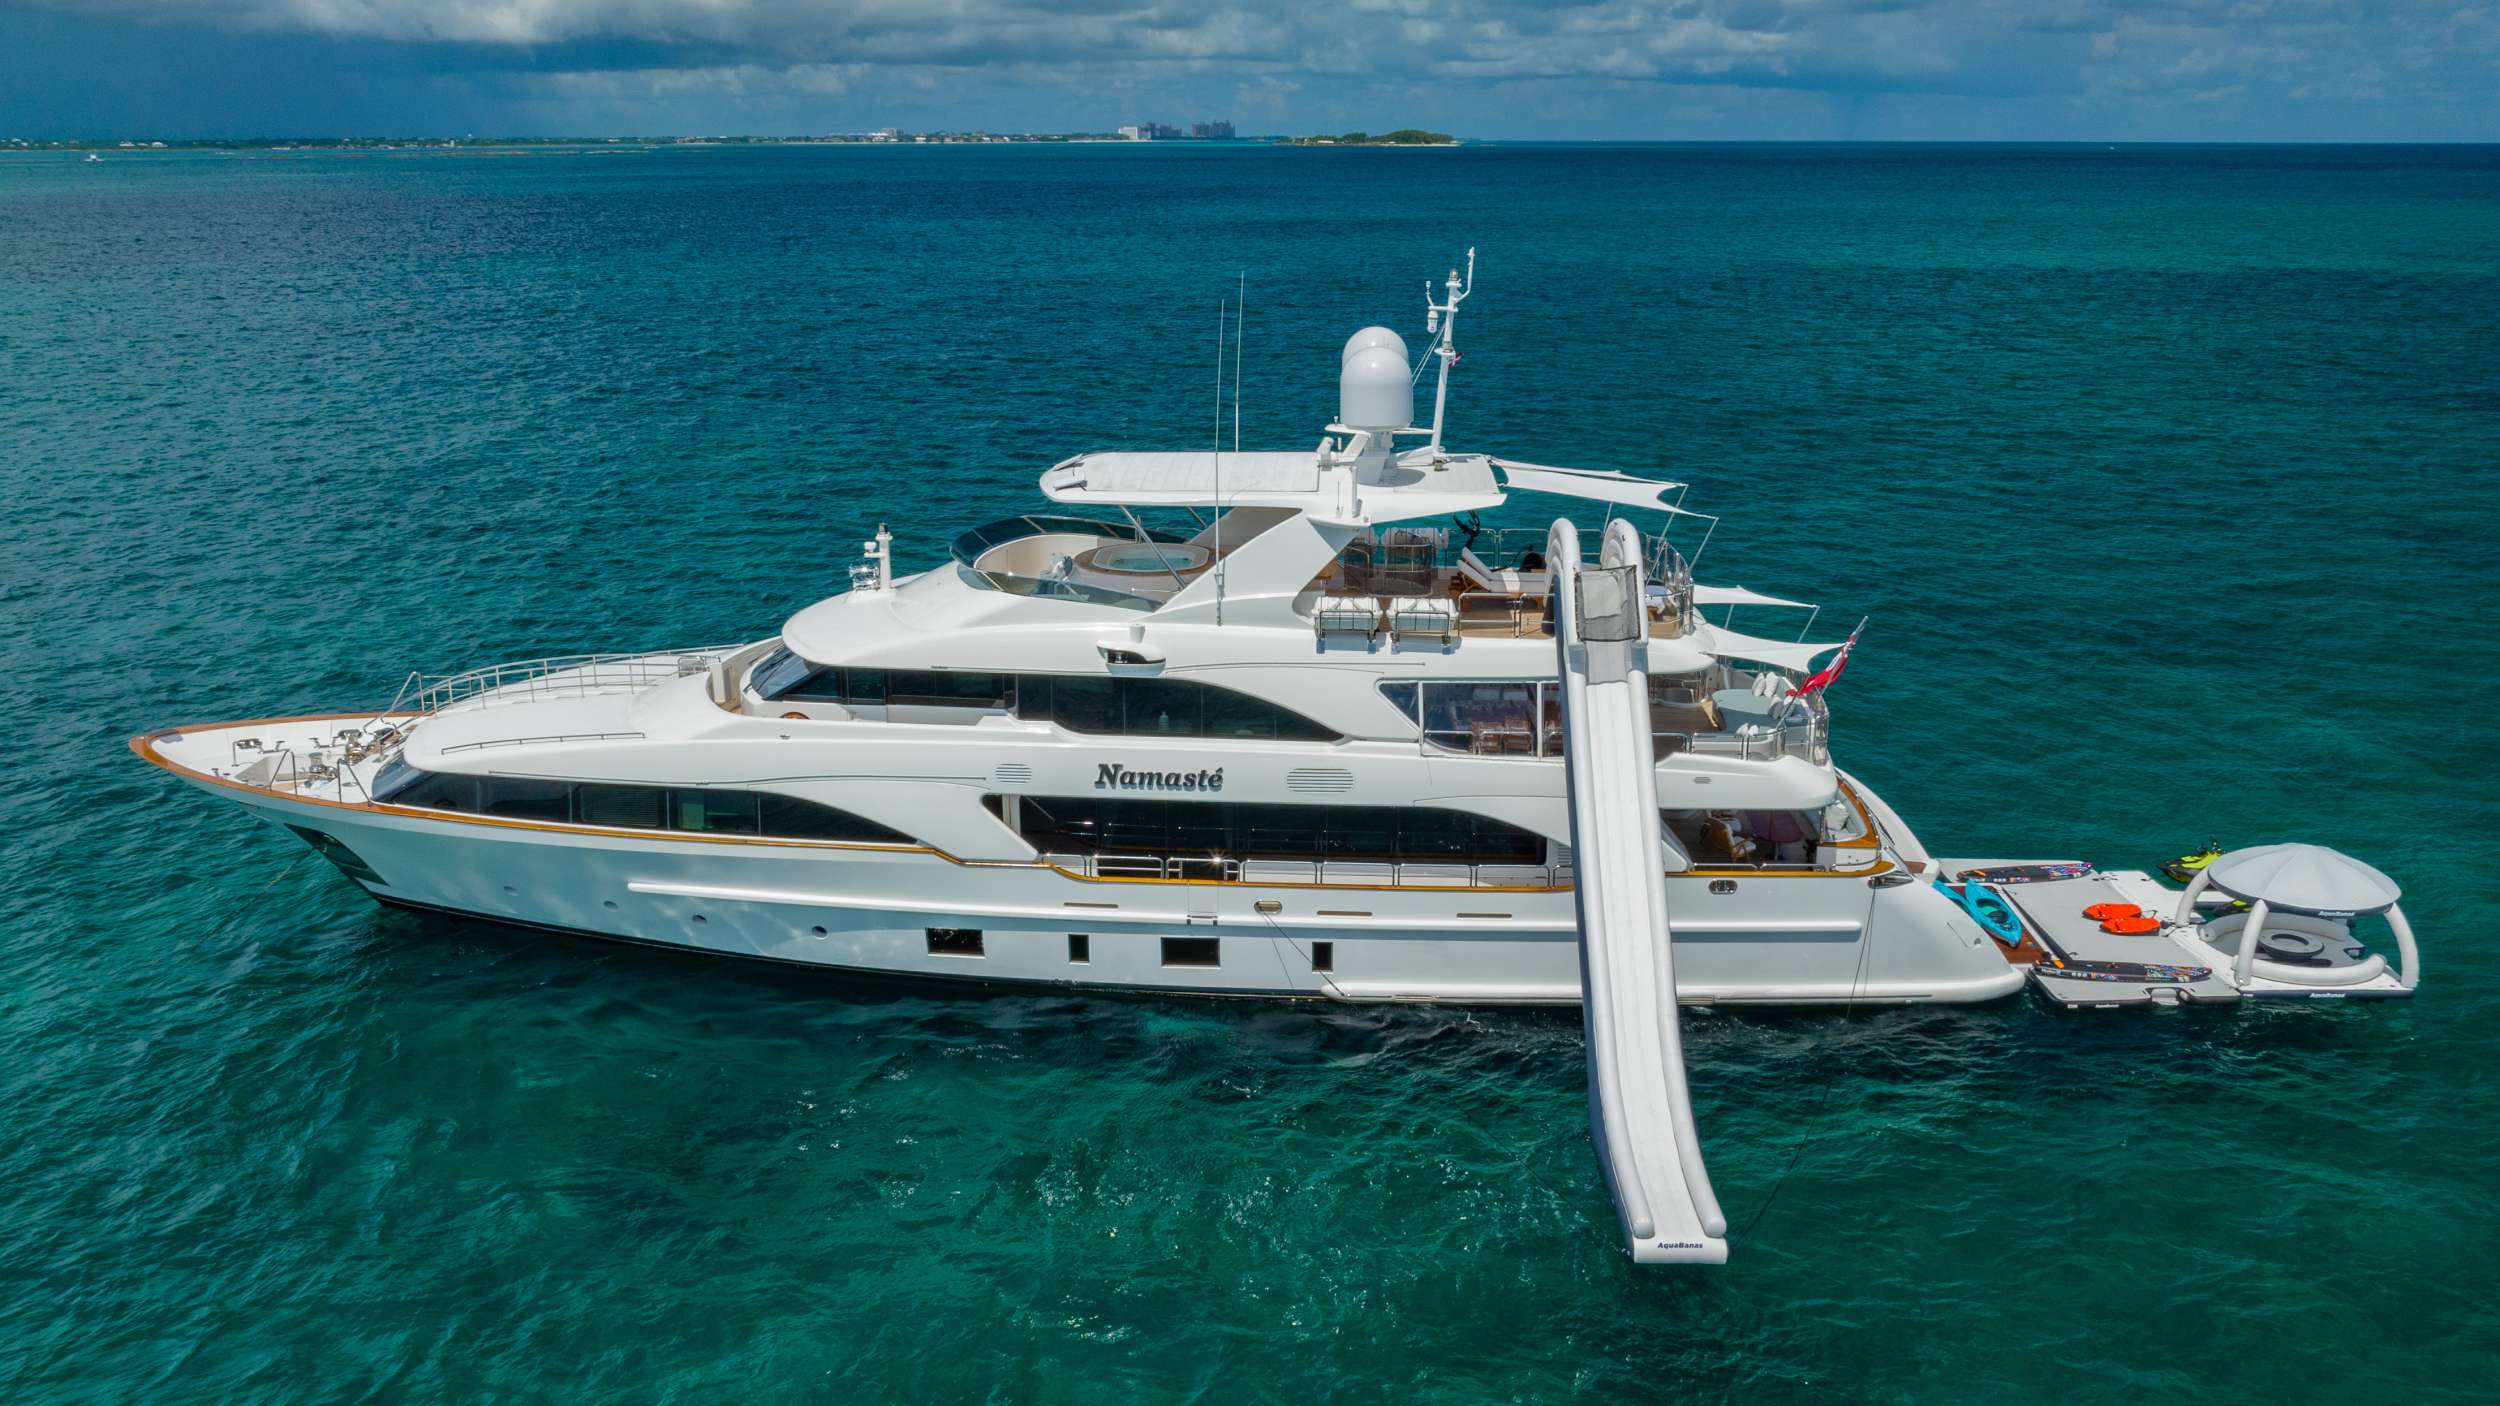 NAMASTE - Yacht Charter Marigot & Boat hire in Bahamas & Caribbean 1